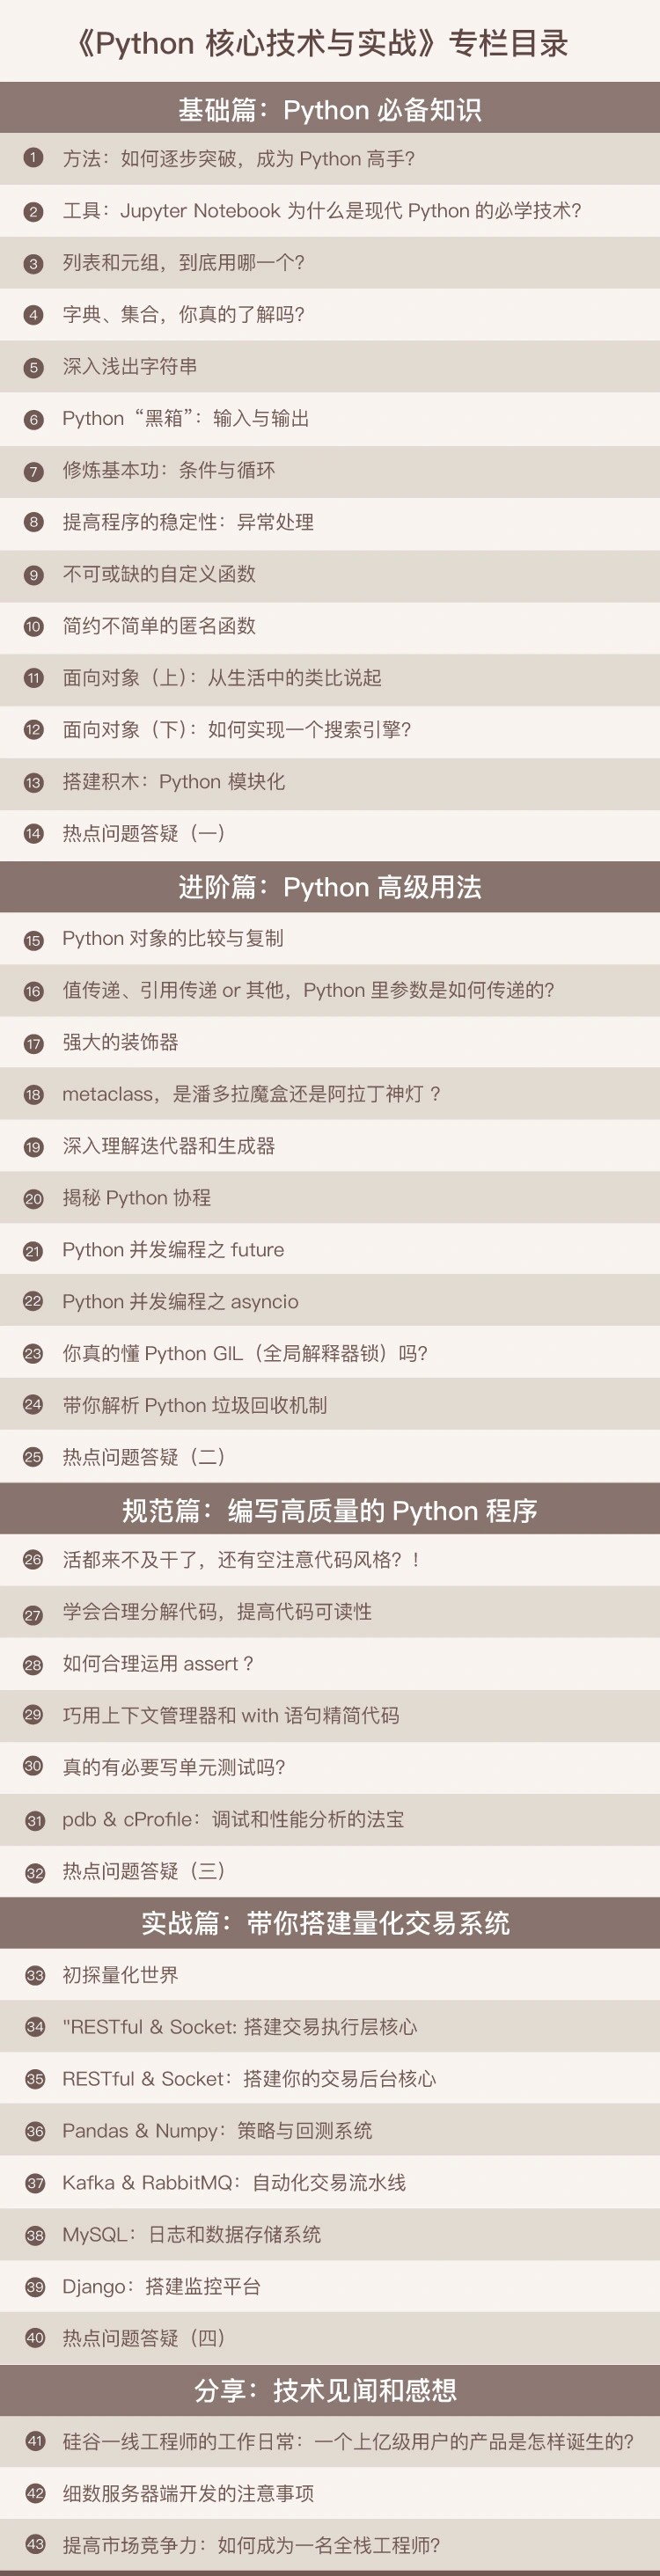 极客时间《Python核心技术与实战》系统提升你的 Python能力插图